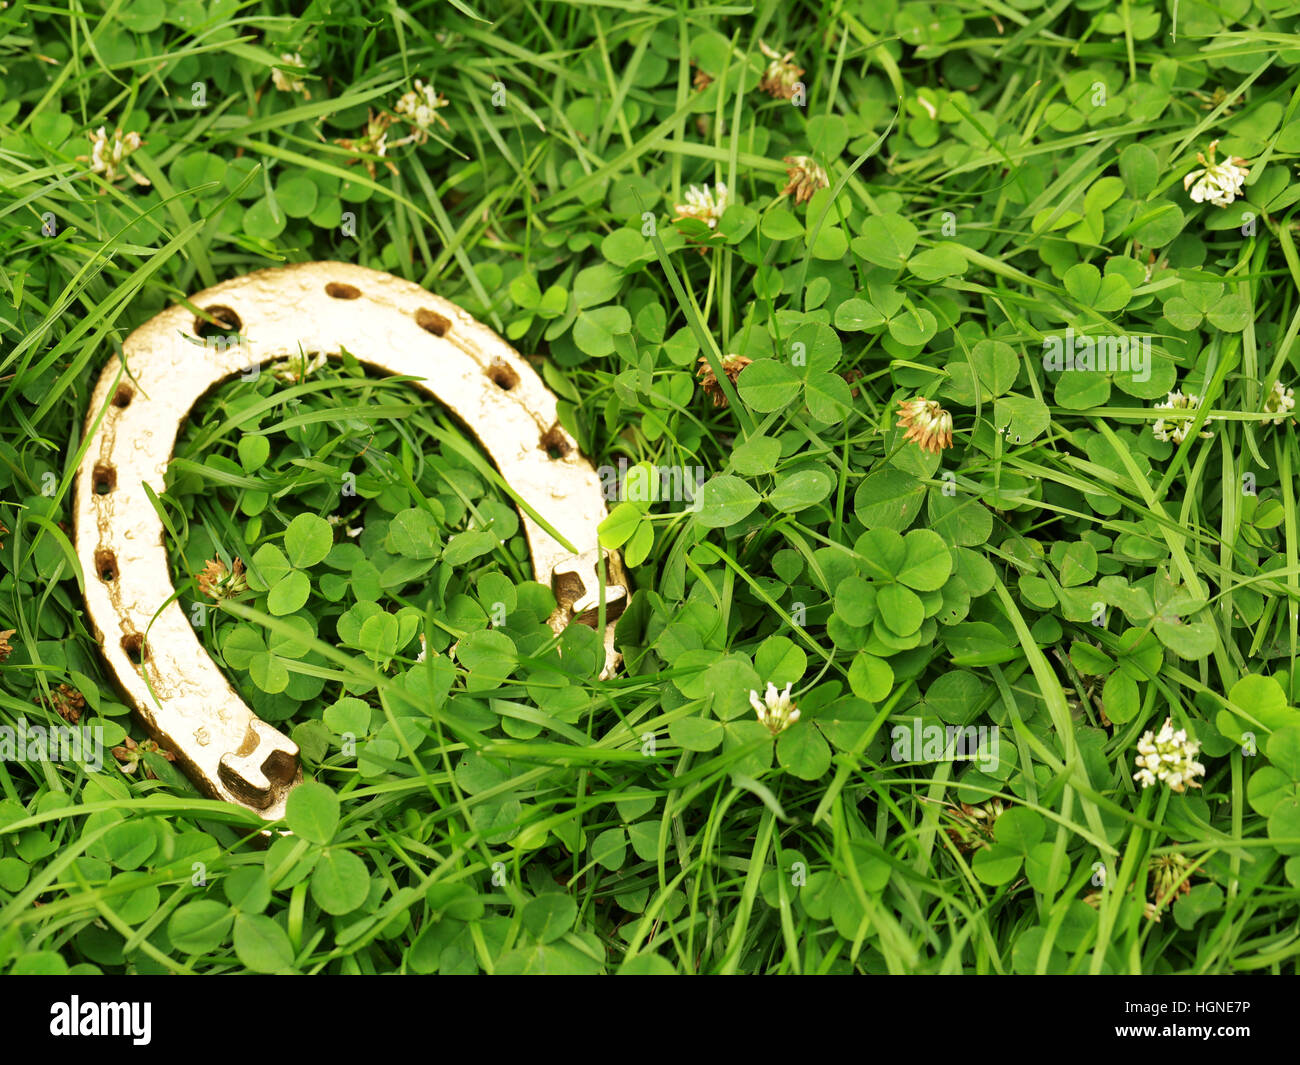 Symboles traditionnels pour Patrick's Day - clover et golden horseshoe Banque D'Images